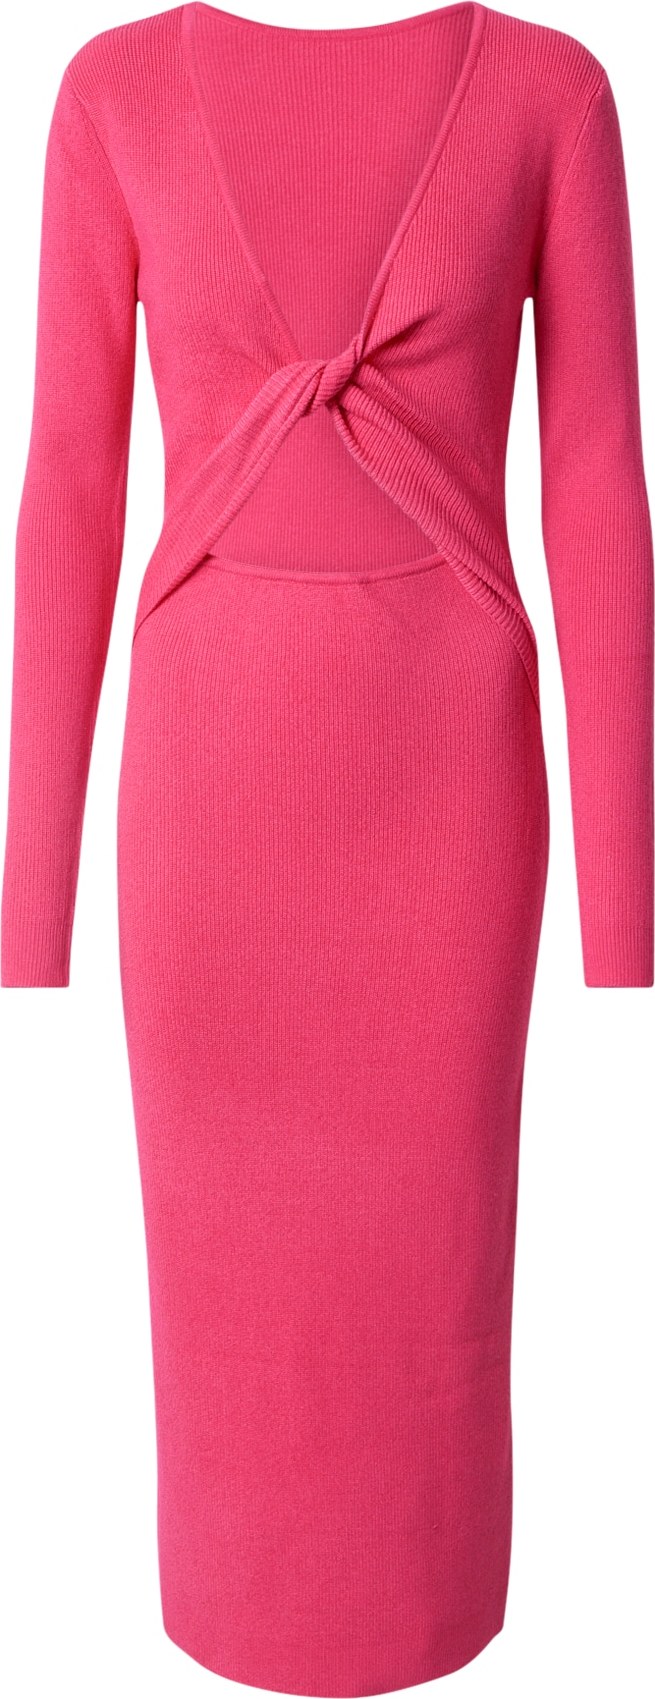 Úpletové šaty 'Lela Jenner' BZR pink